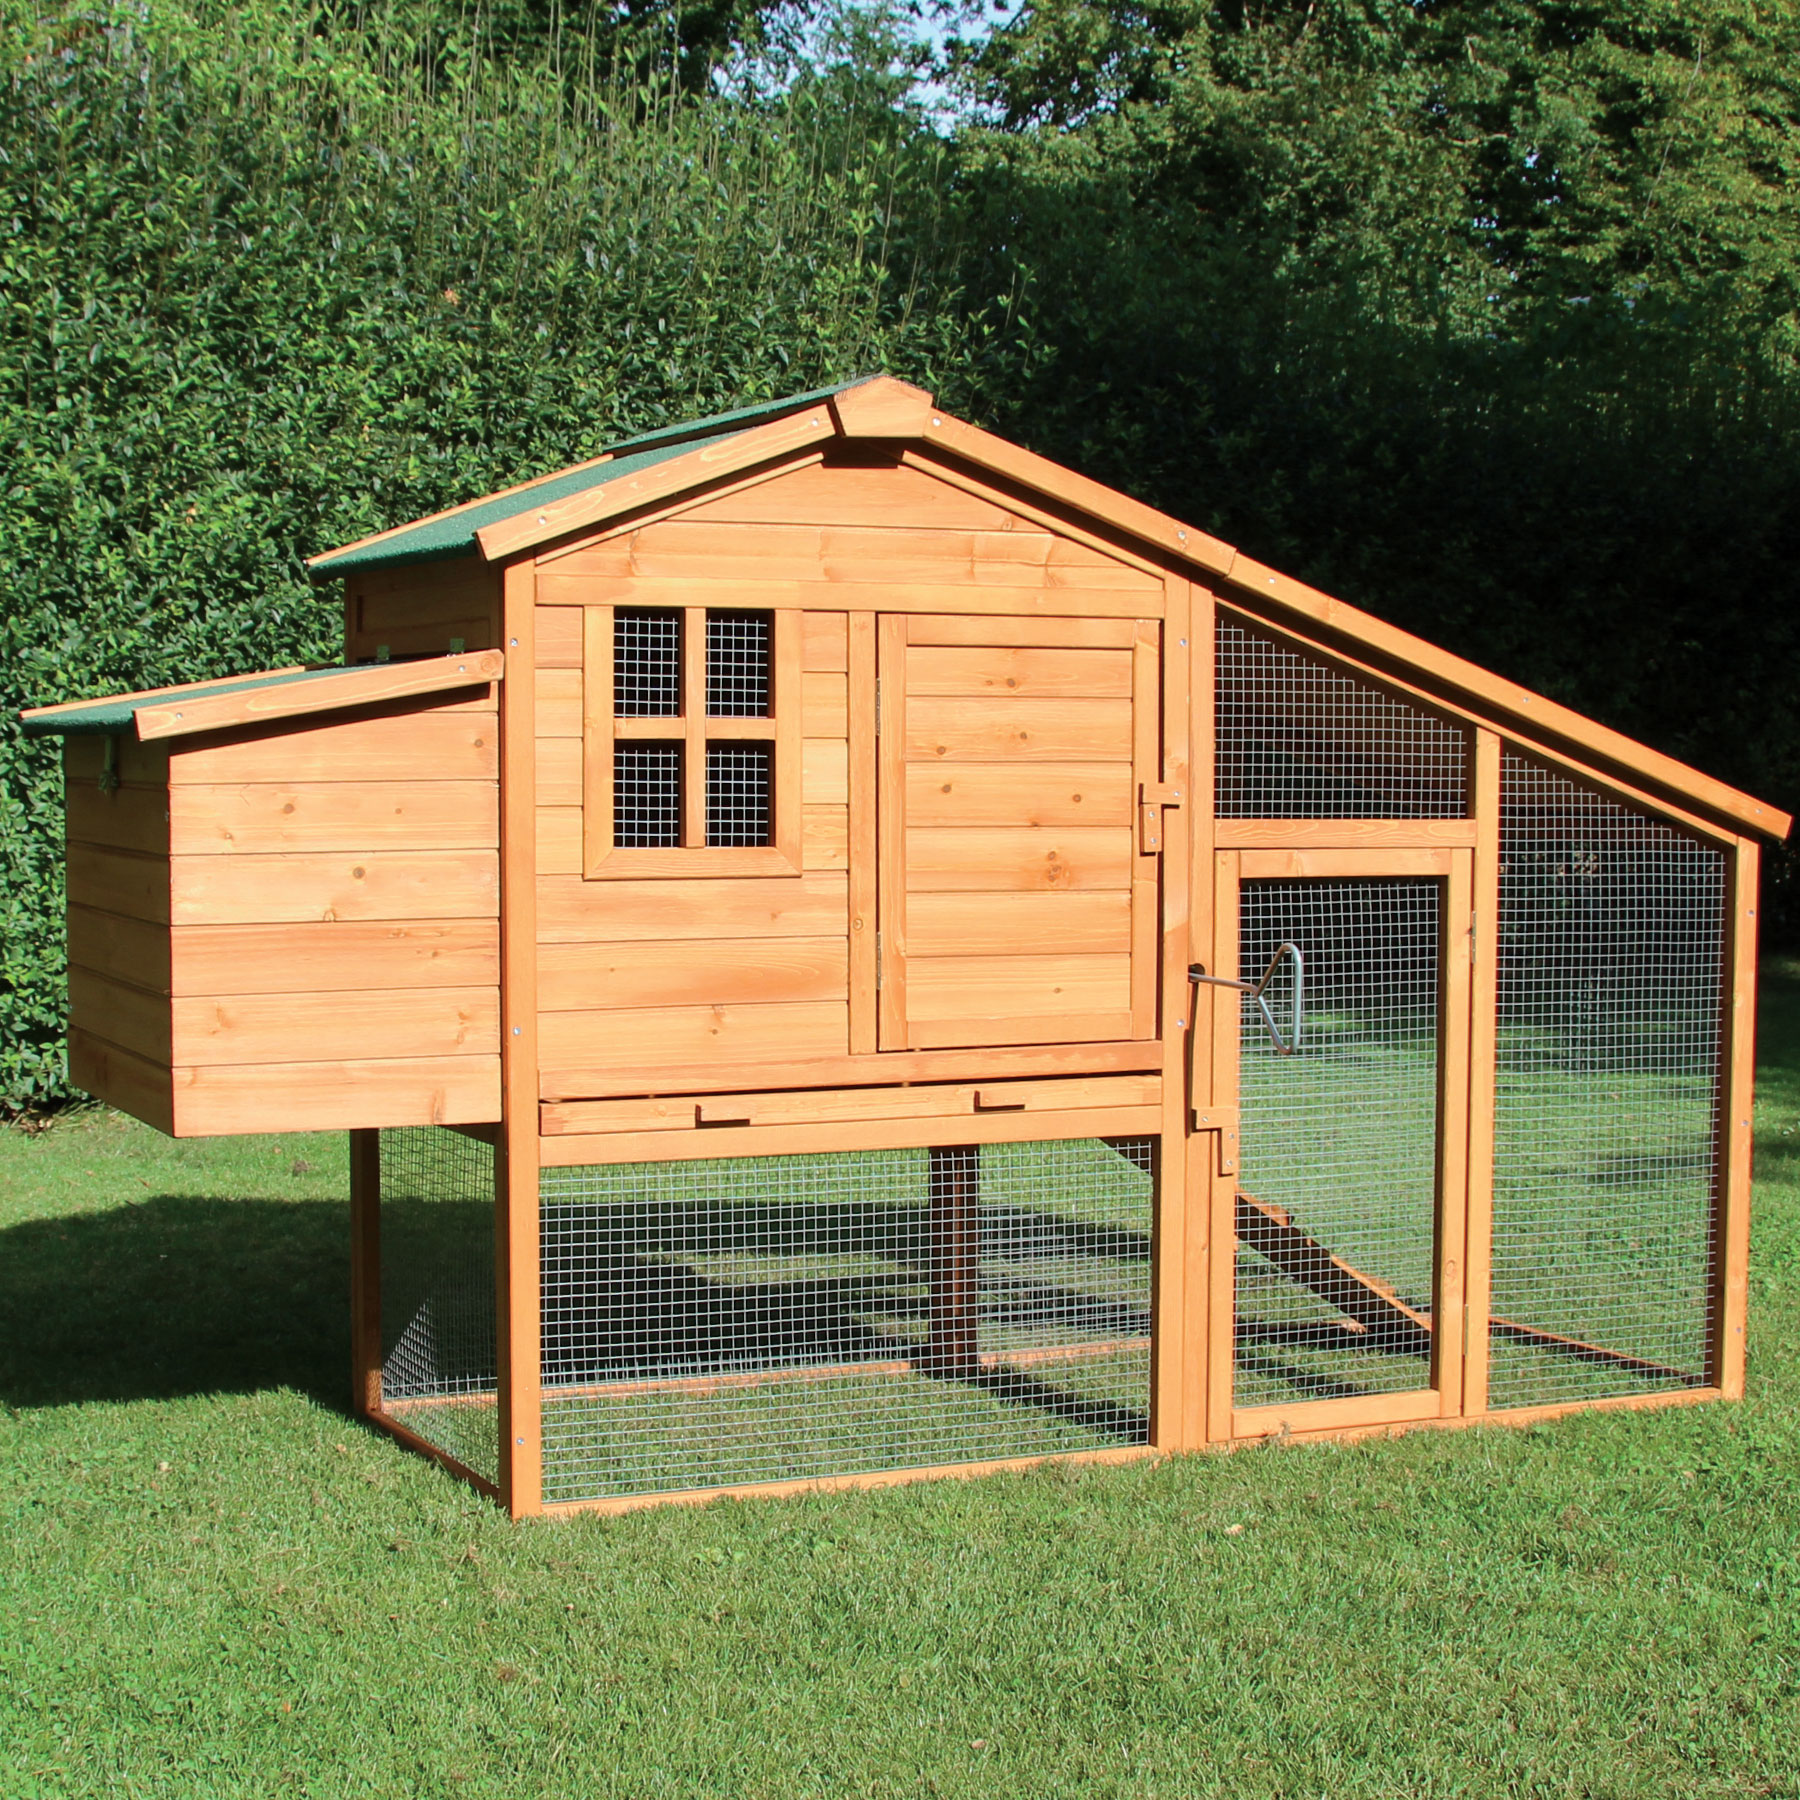 Hühnerhaus / Hasenhaus "Bertha“ - Unterschlupf für Hühner, Hasen, Wachteln, Kleintiere